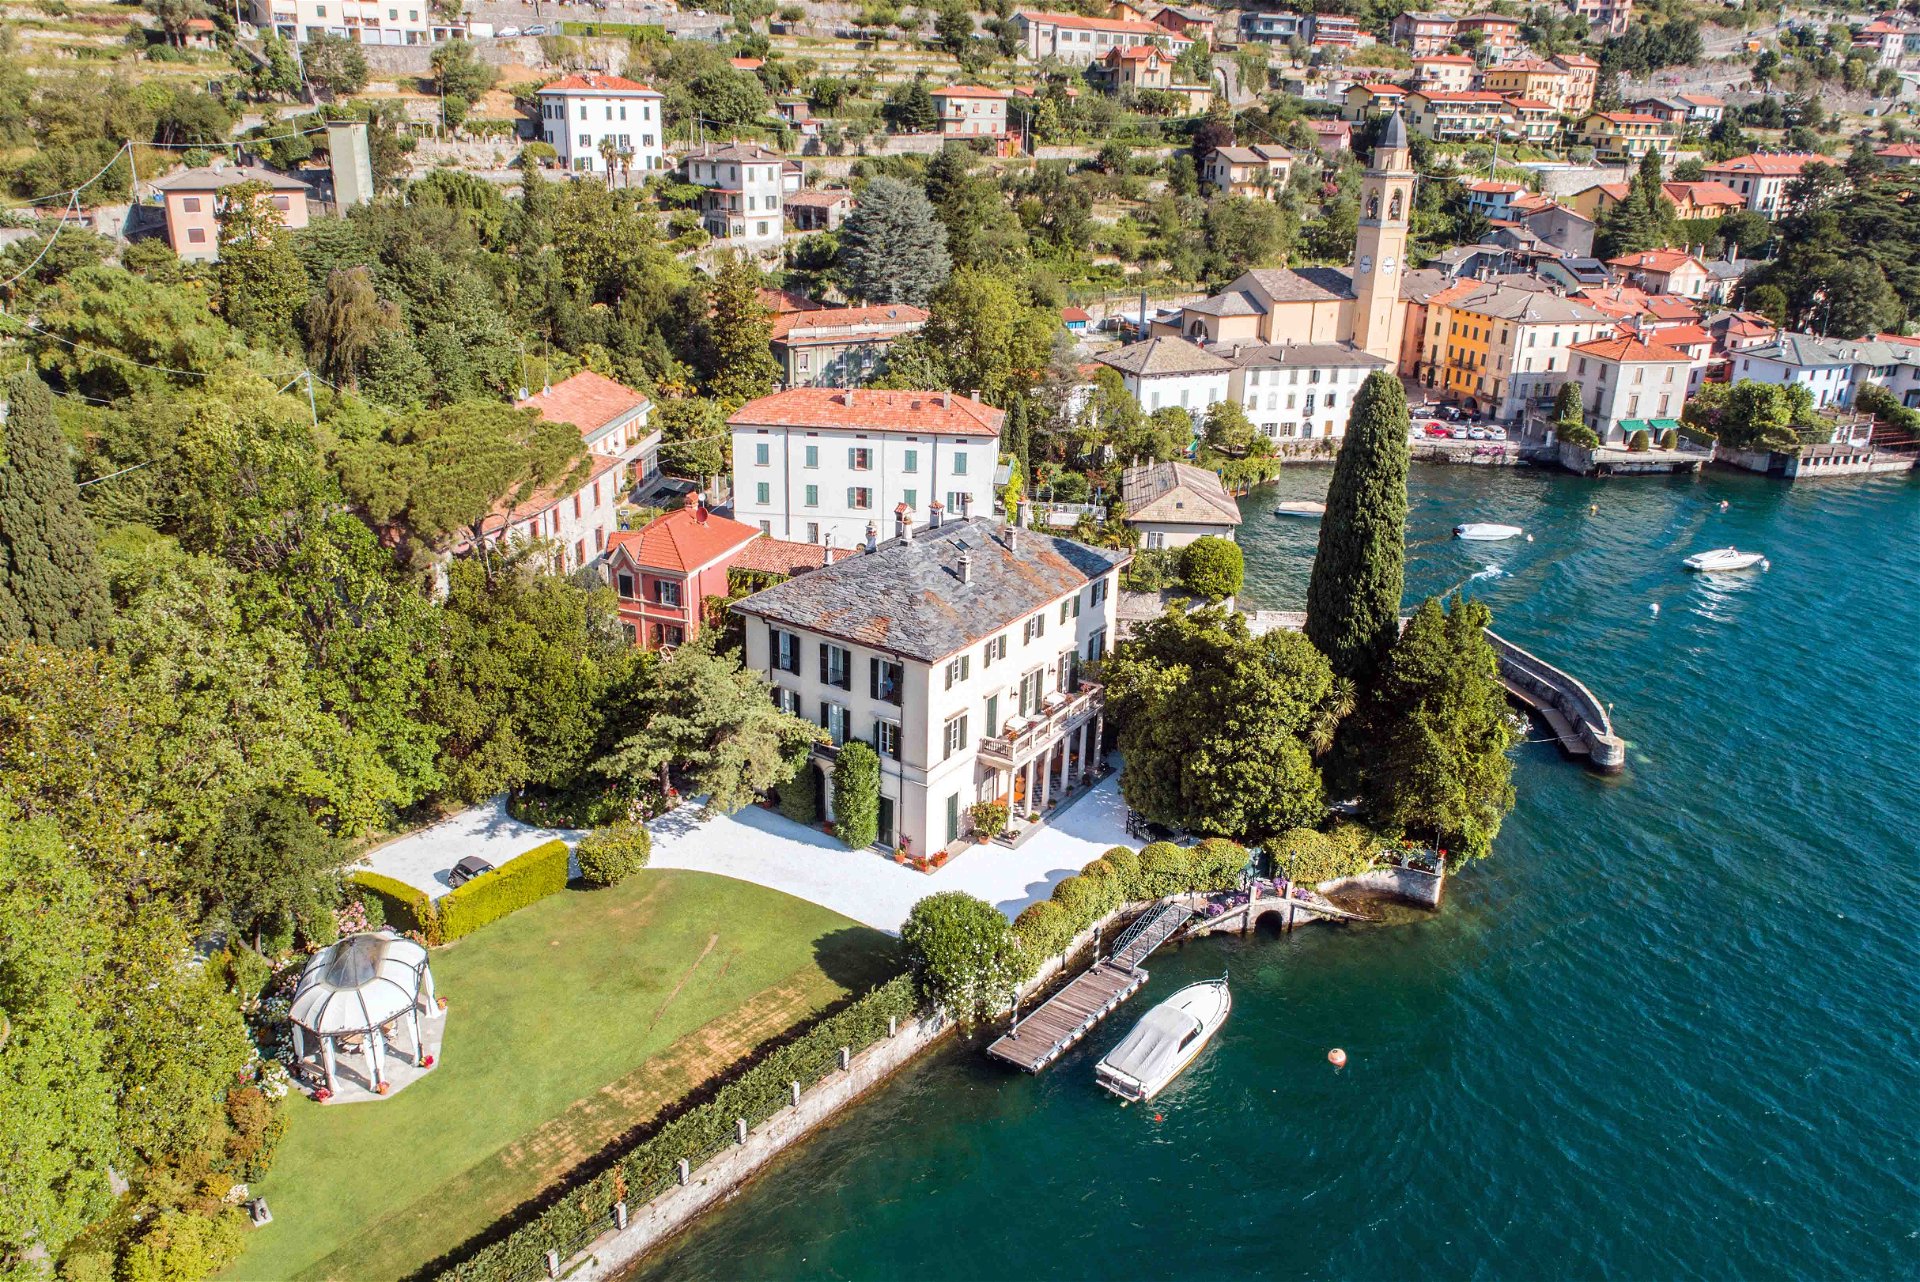 Die pittoreske »Villa Oleandra« in Laglio am Comer See, die der 62-jährige Schauspieler und Unternehmer George Clooney vor rund 20 Jahren erwarb und wo er auch seine jetzige Frau Amal kennengelernt hat, dürfte bald eine:n neue:n Besitzer:in bekommen.